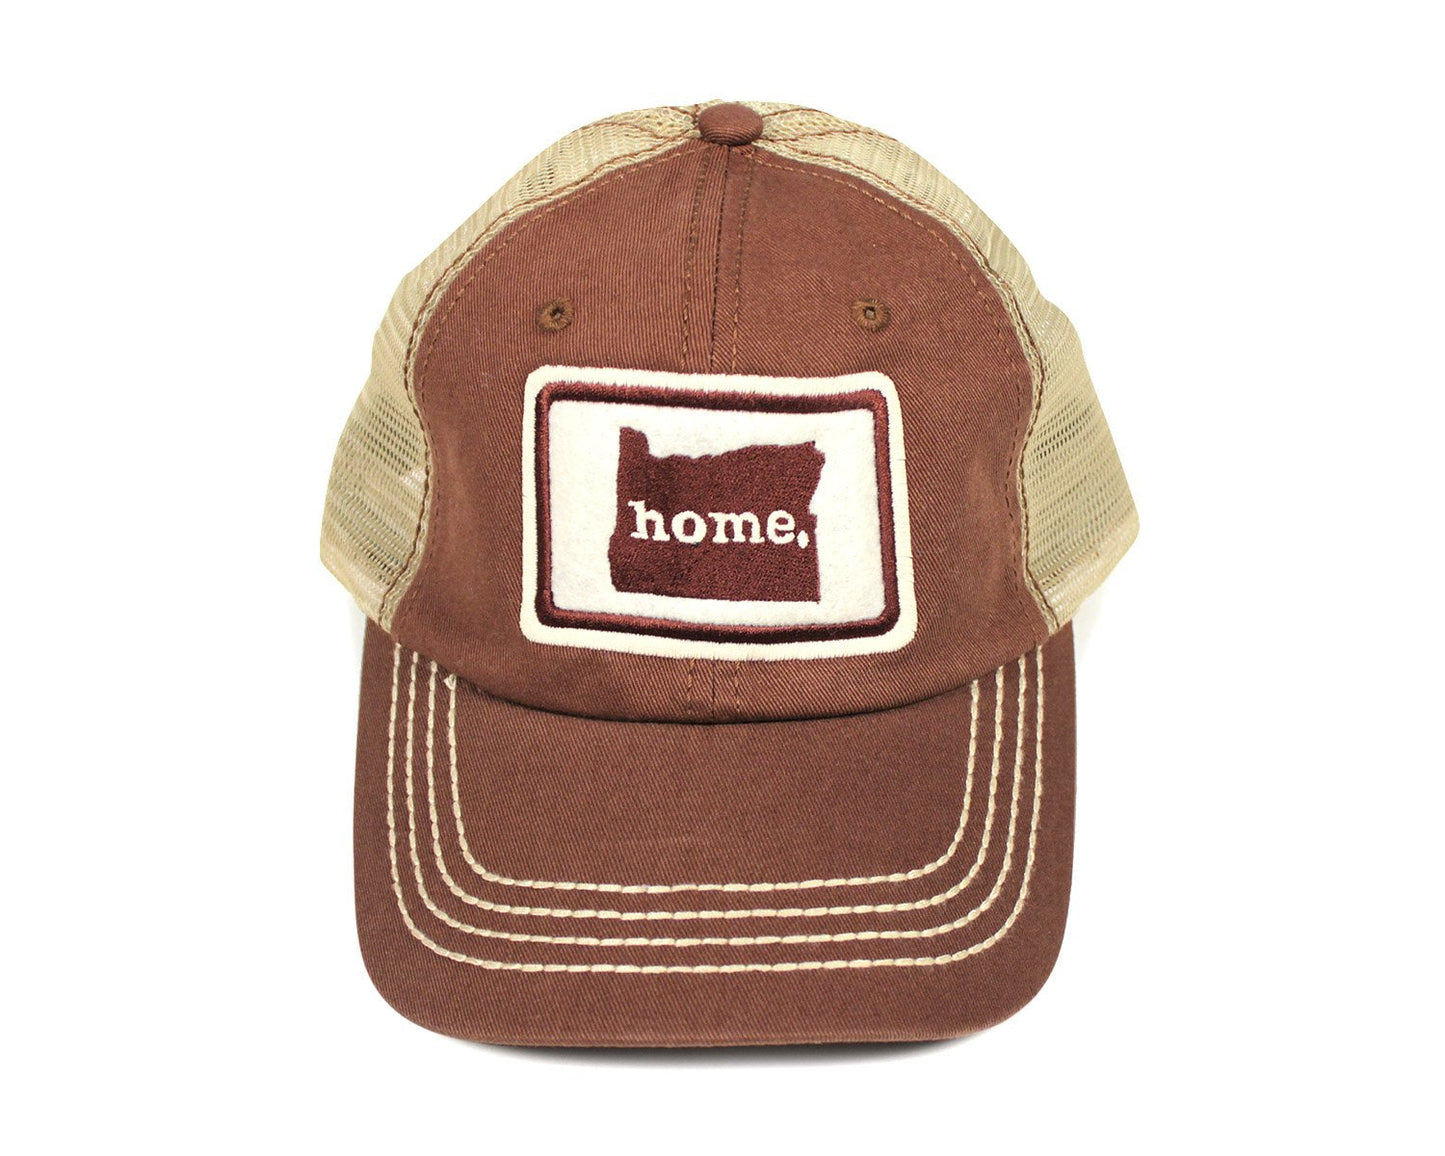 home. Mesh Hat - Montana